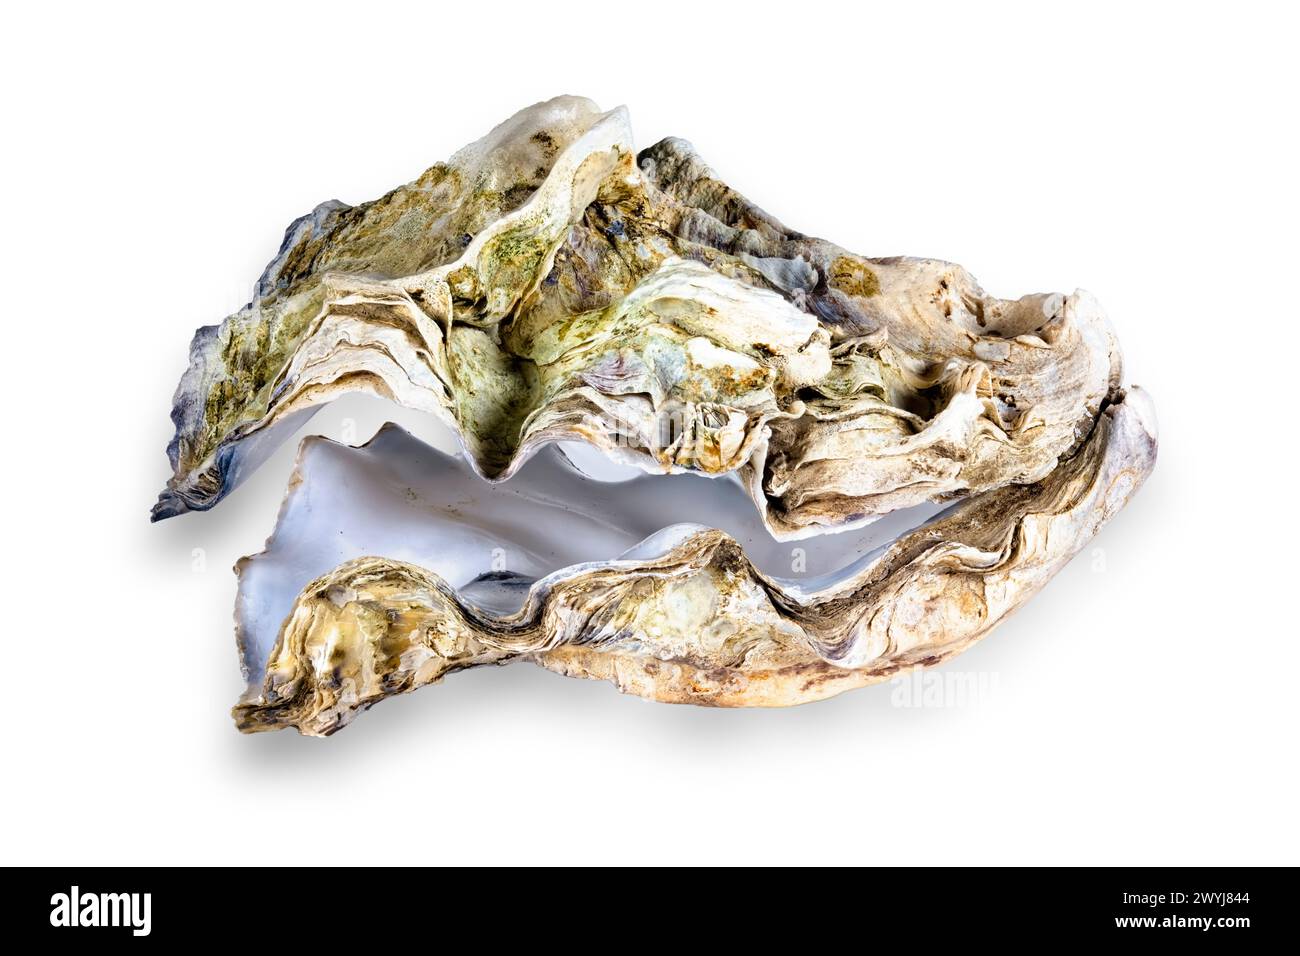 Innenaufnahme einer isolierten Auster / Schale auf einem quadratischen weißen Hintergrund. Stockfoto